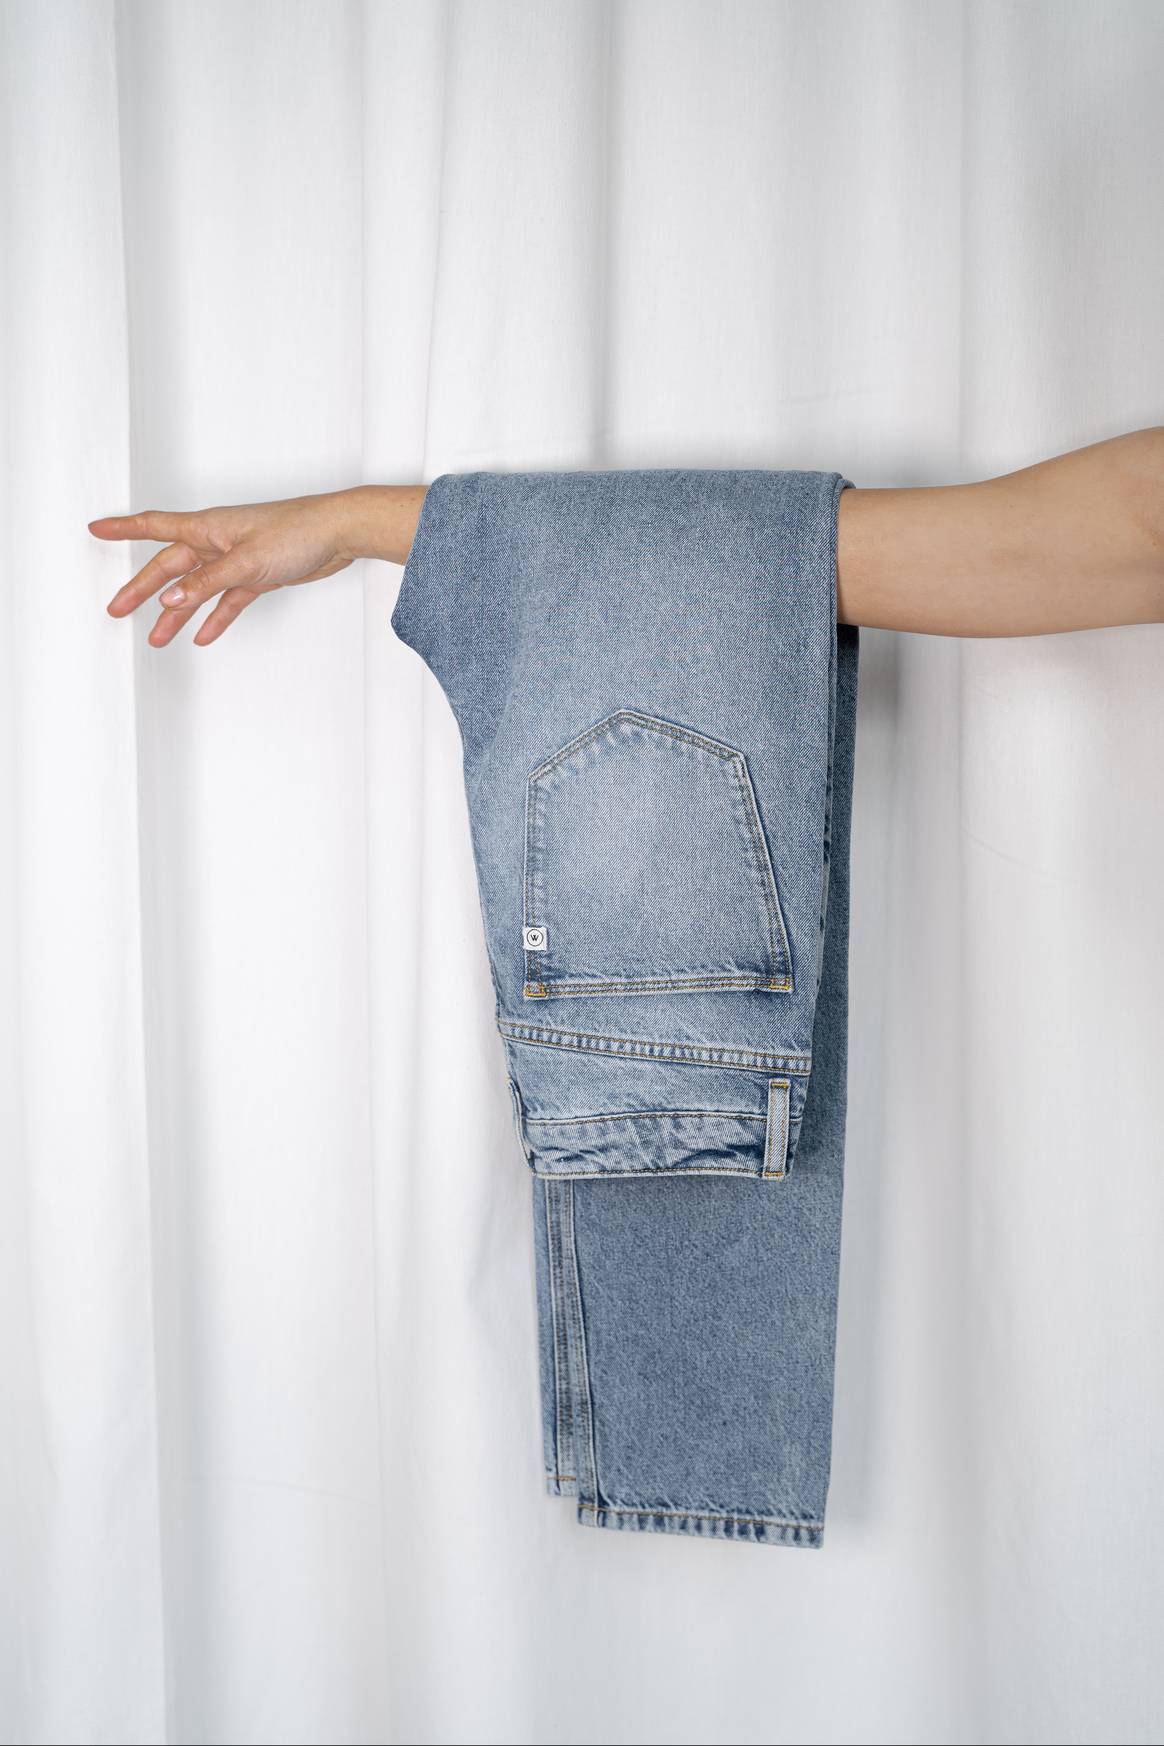 Beeld: Spijkerbroek geheel gemaakt van post-consumer gerecyclede vezels, ontwikkeld door Mud Jeans en hogeschool Saxion. Eigendom: Mud Jeans en Saxion via Mediatic PR